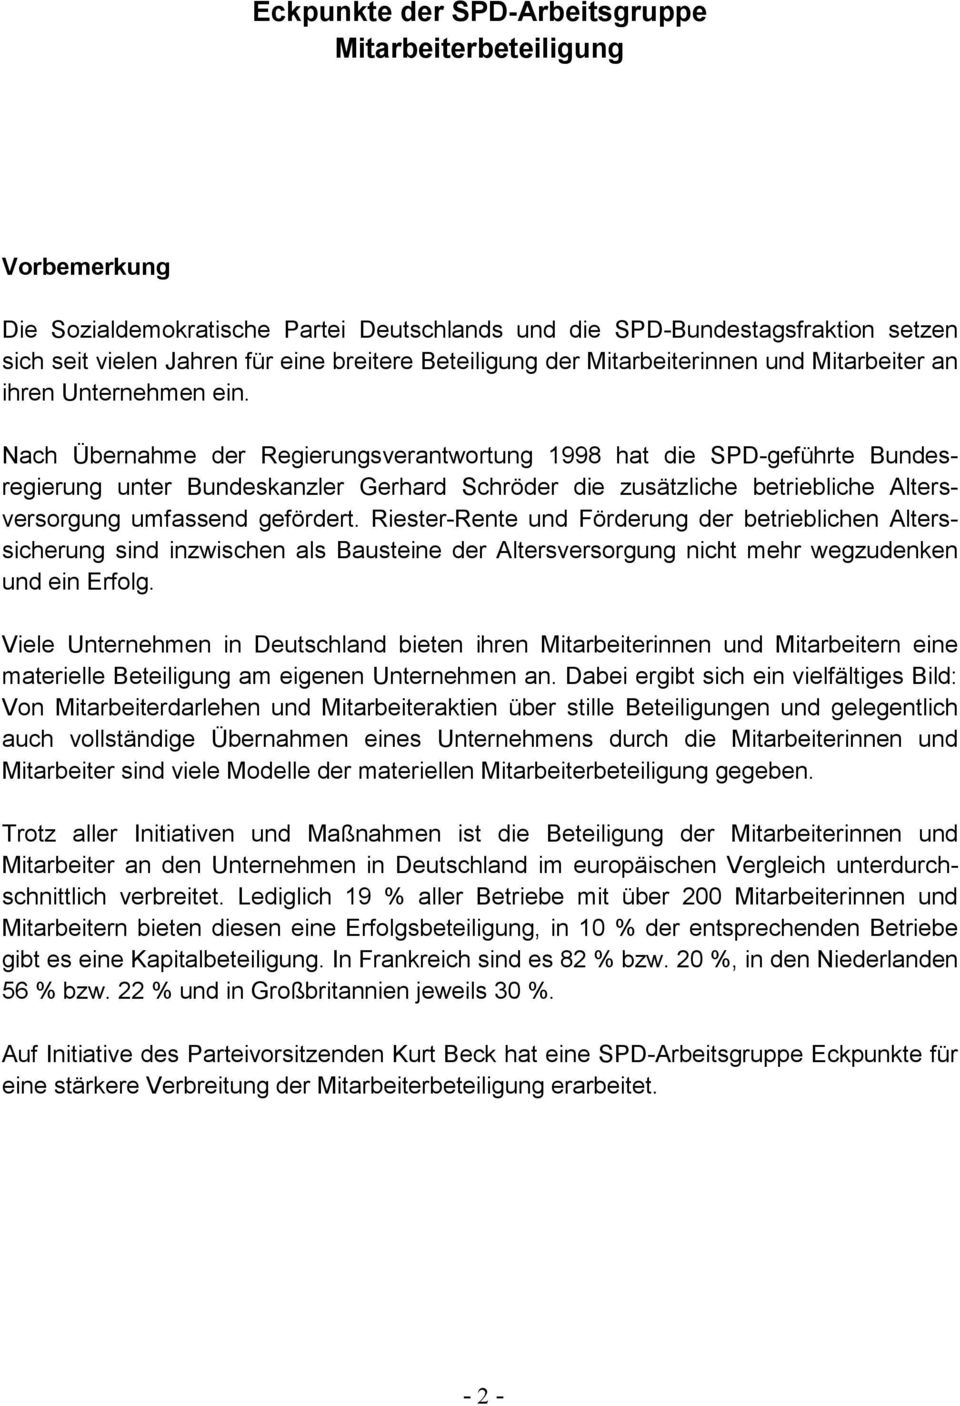 Nach Übernahme der Regierungsverantwortung 1998 hat die SPD-geführte Bundesregierung unter Bundeskanzler Gerhard Schröder die zusätzliche betriebliche Altersversorgung umfassend gefördert.